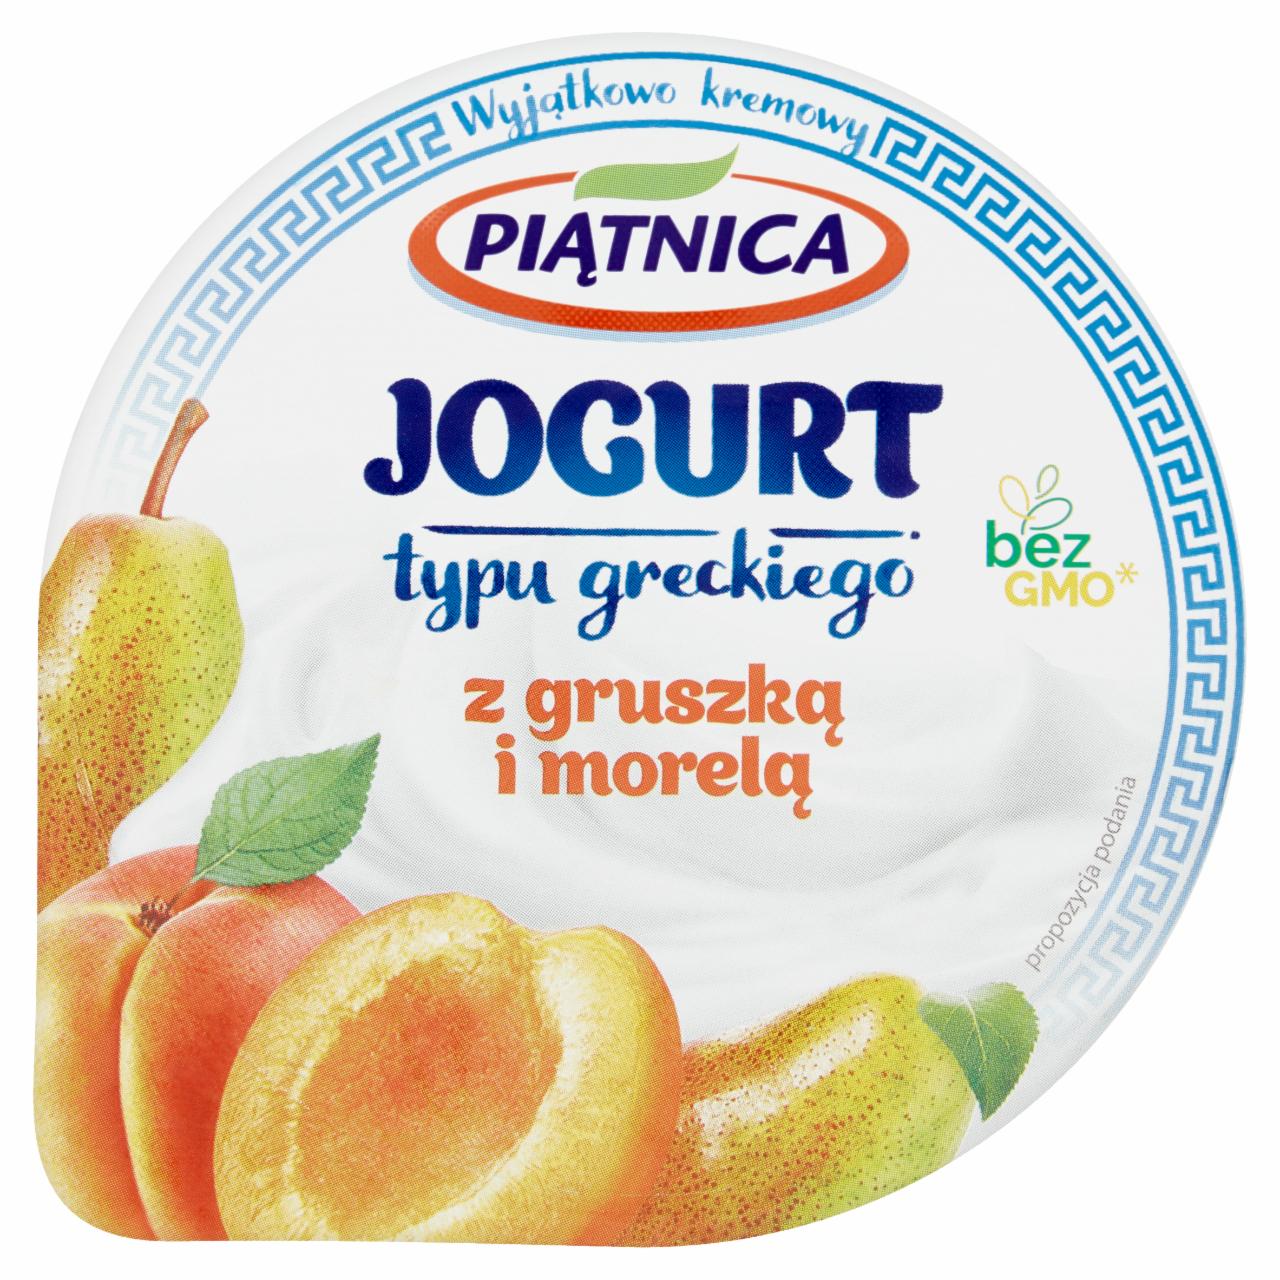 Zdjęcia - Piątnica Jogurt typu greckiego z gruszką i morelą 150 g